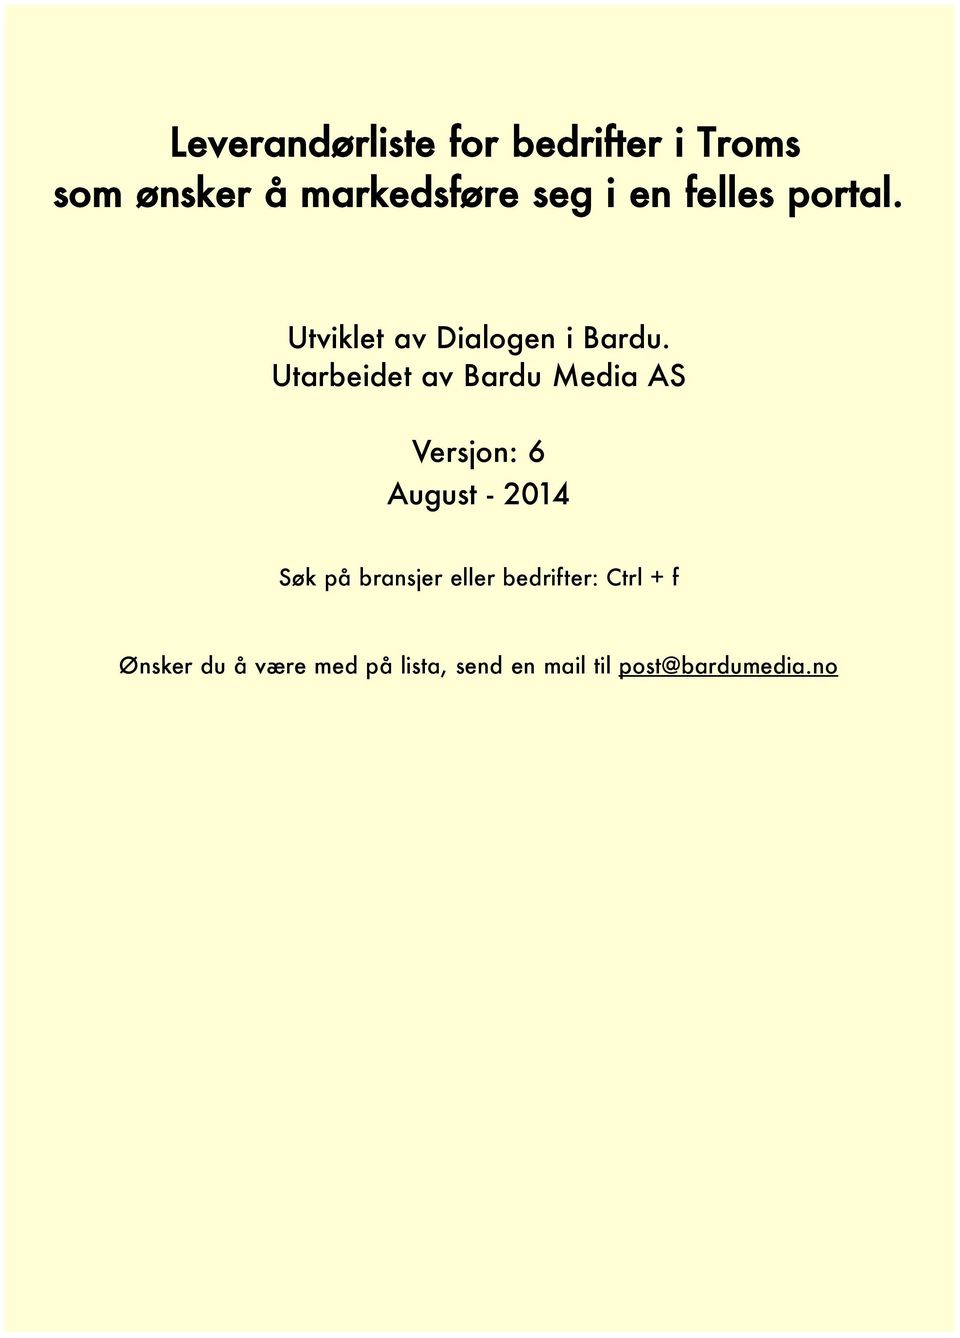 Utarbeidet av Bardu Media AS Versjon: 6 August - 2014 Søk på bransjer